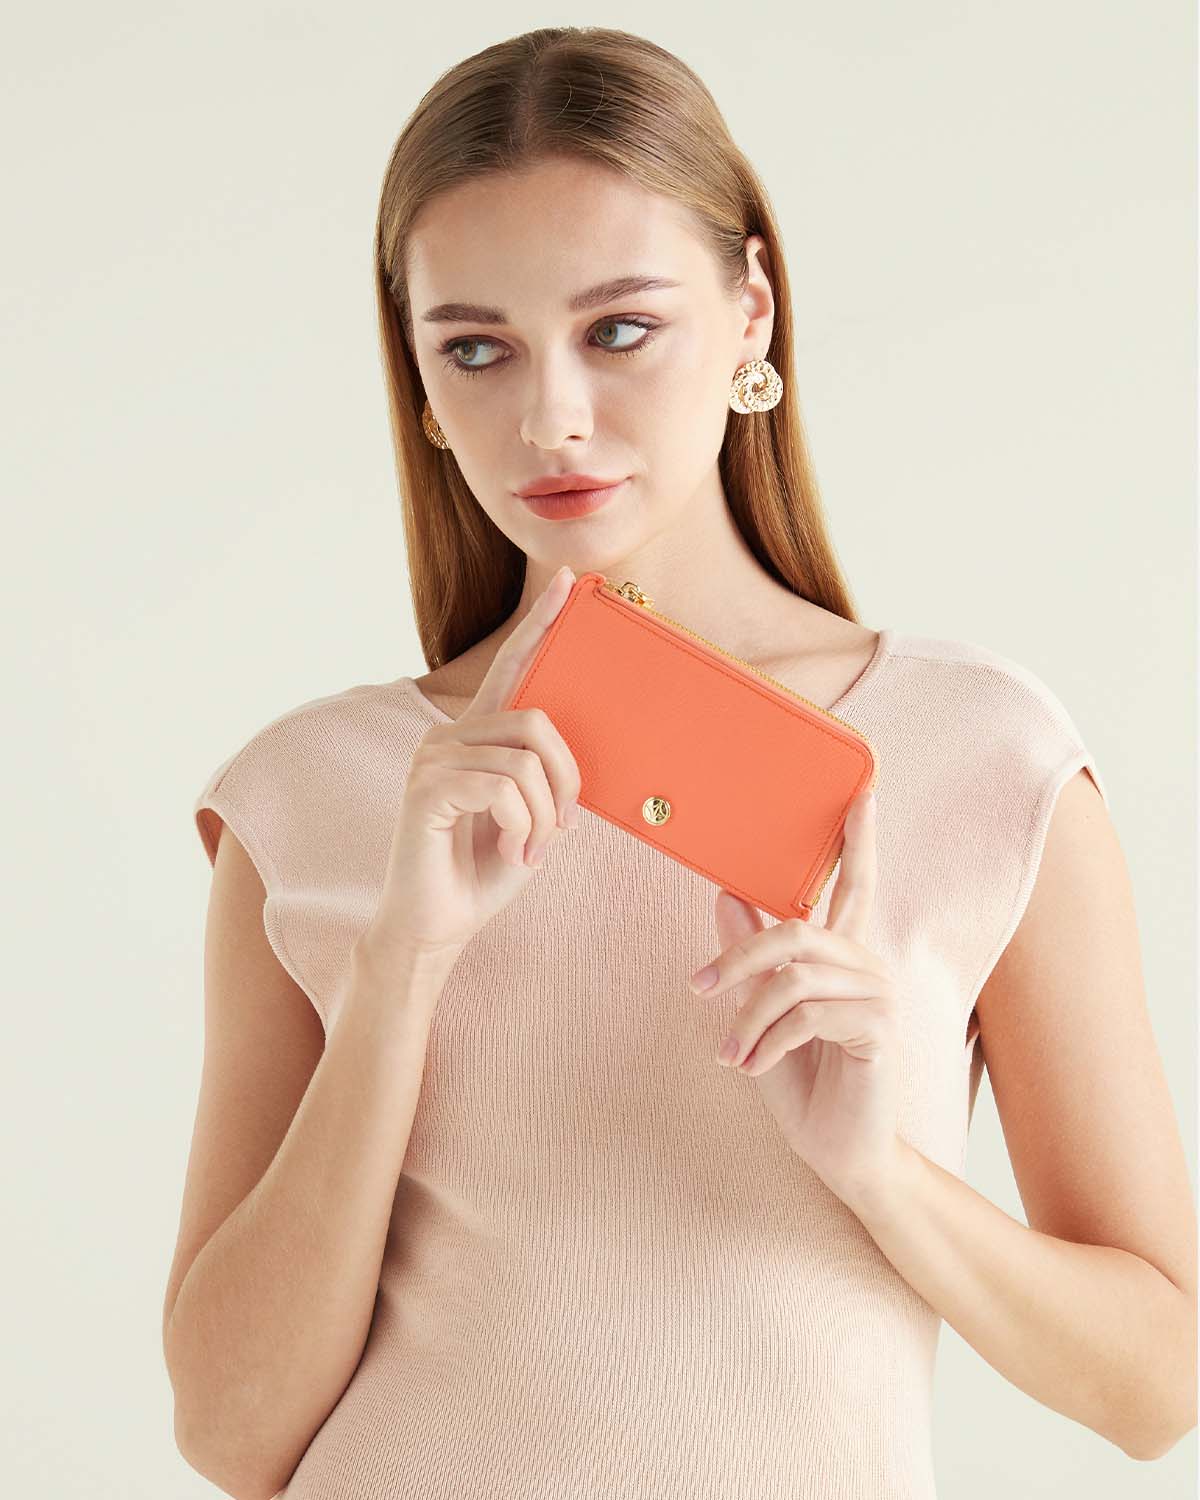 VERA Emily Long Card holder in Joyful Orange กระเป๋าใส่บัตรหนังแท้ ทรงยาว พร้อมช่องซิบ สีส้ม